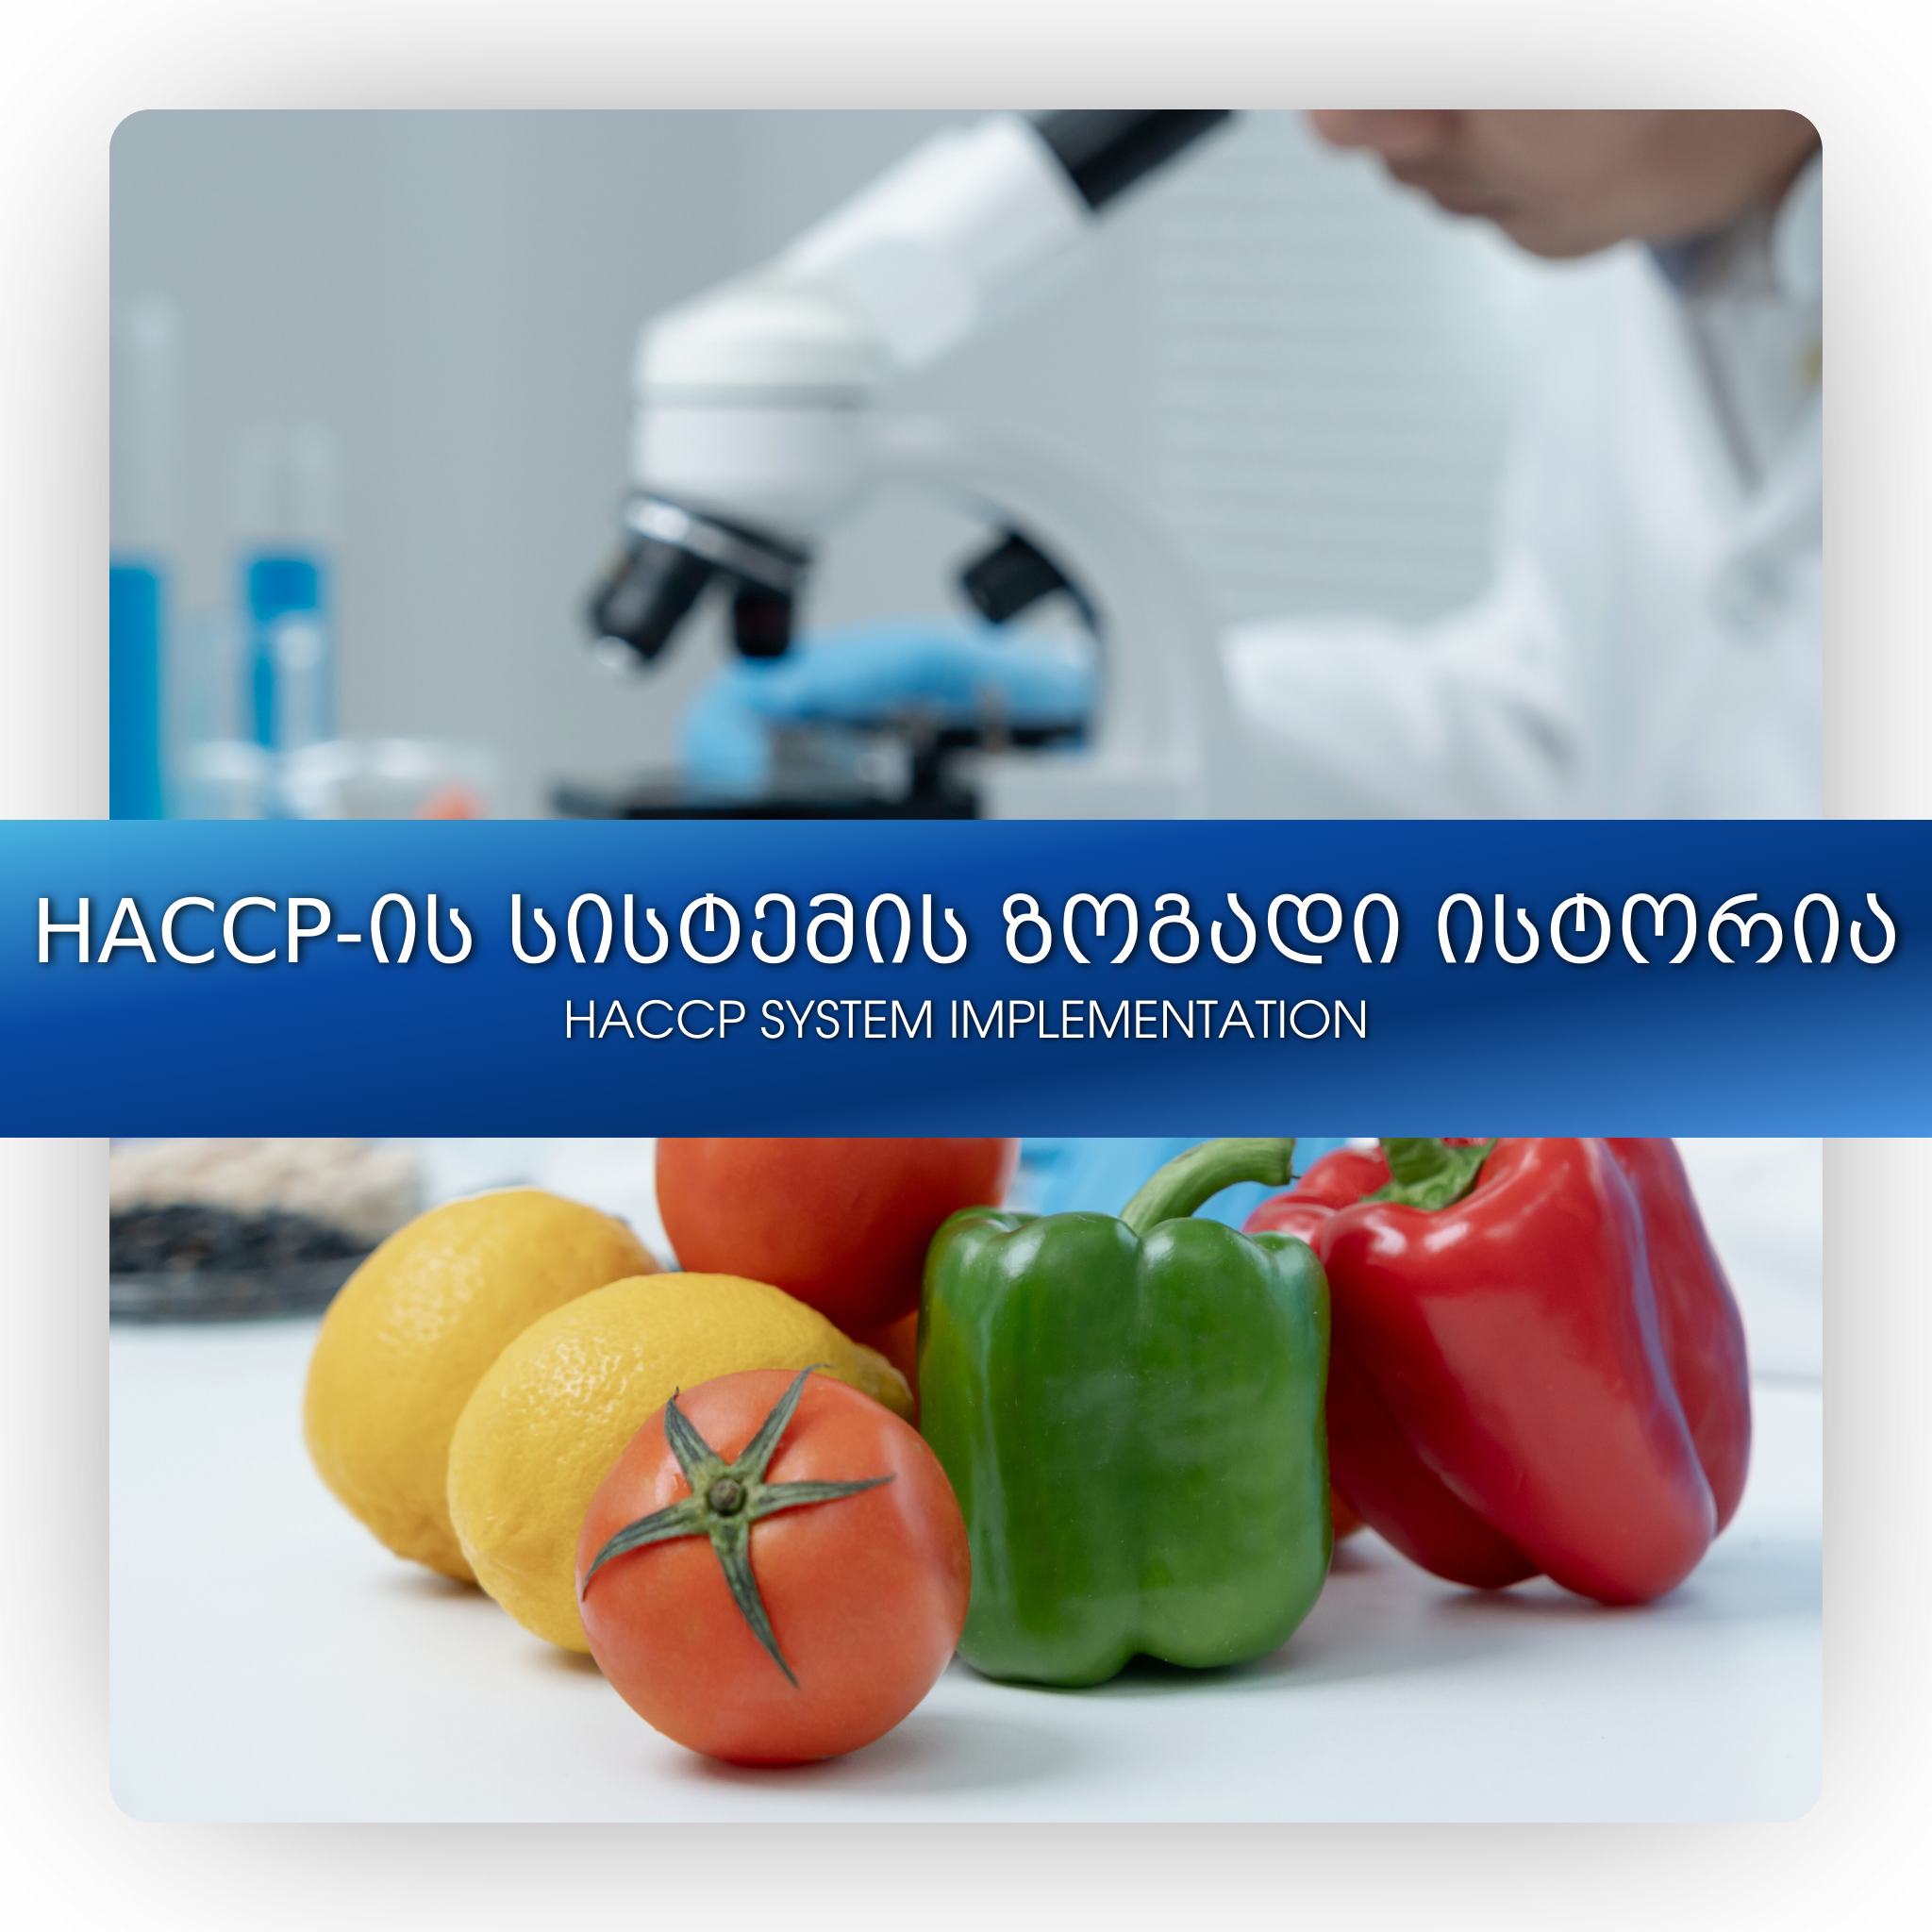 HACCP-ის სისტემის ზოგადი ისტორია